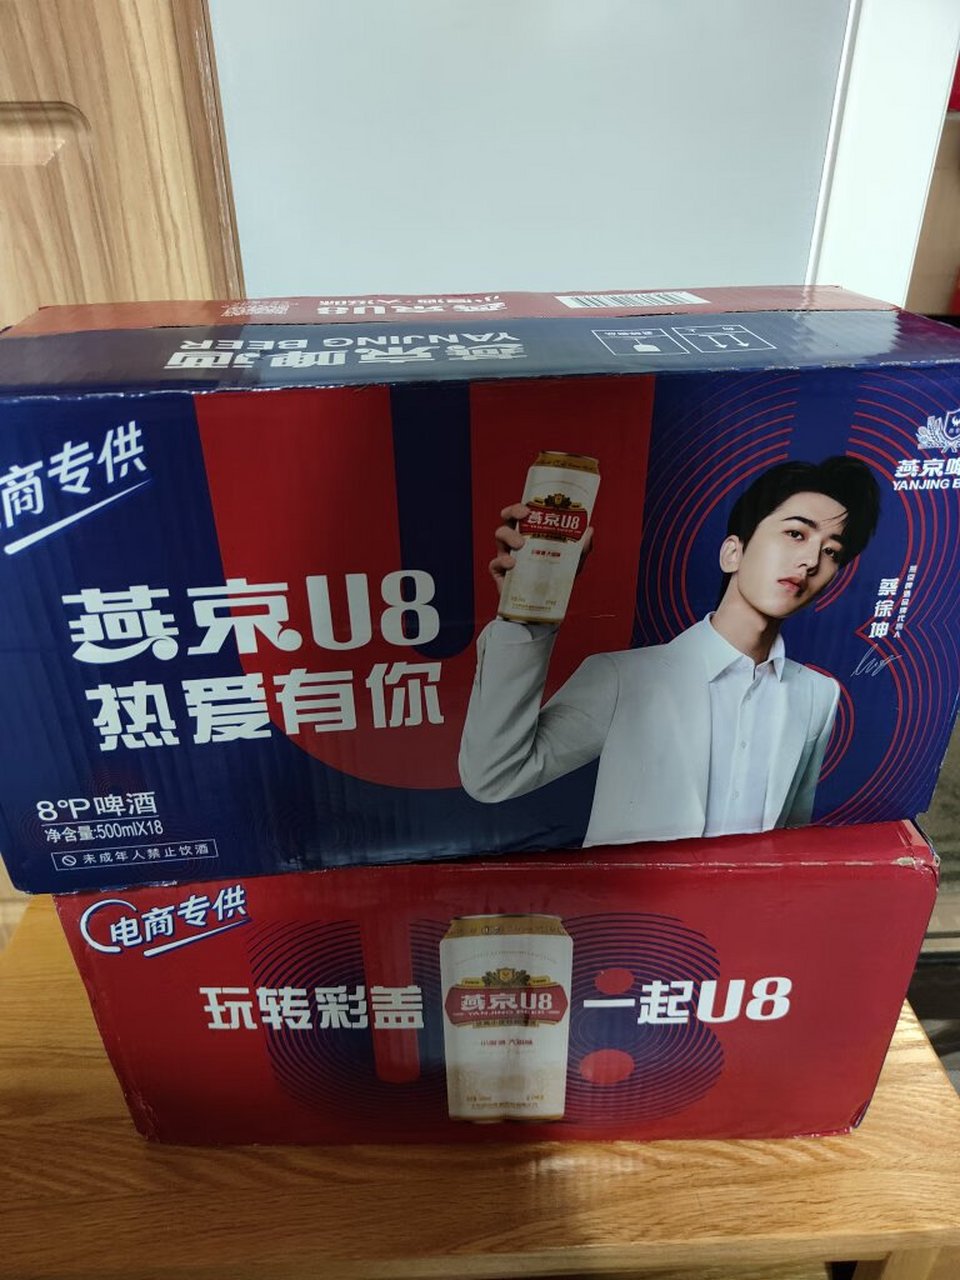 燕京u8啤酒代言人图片